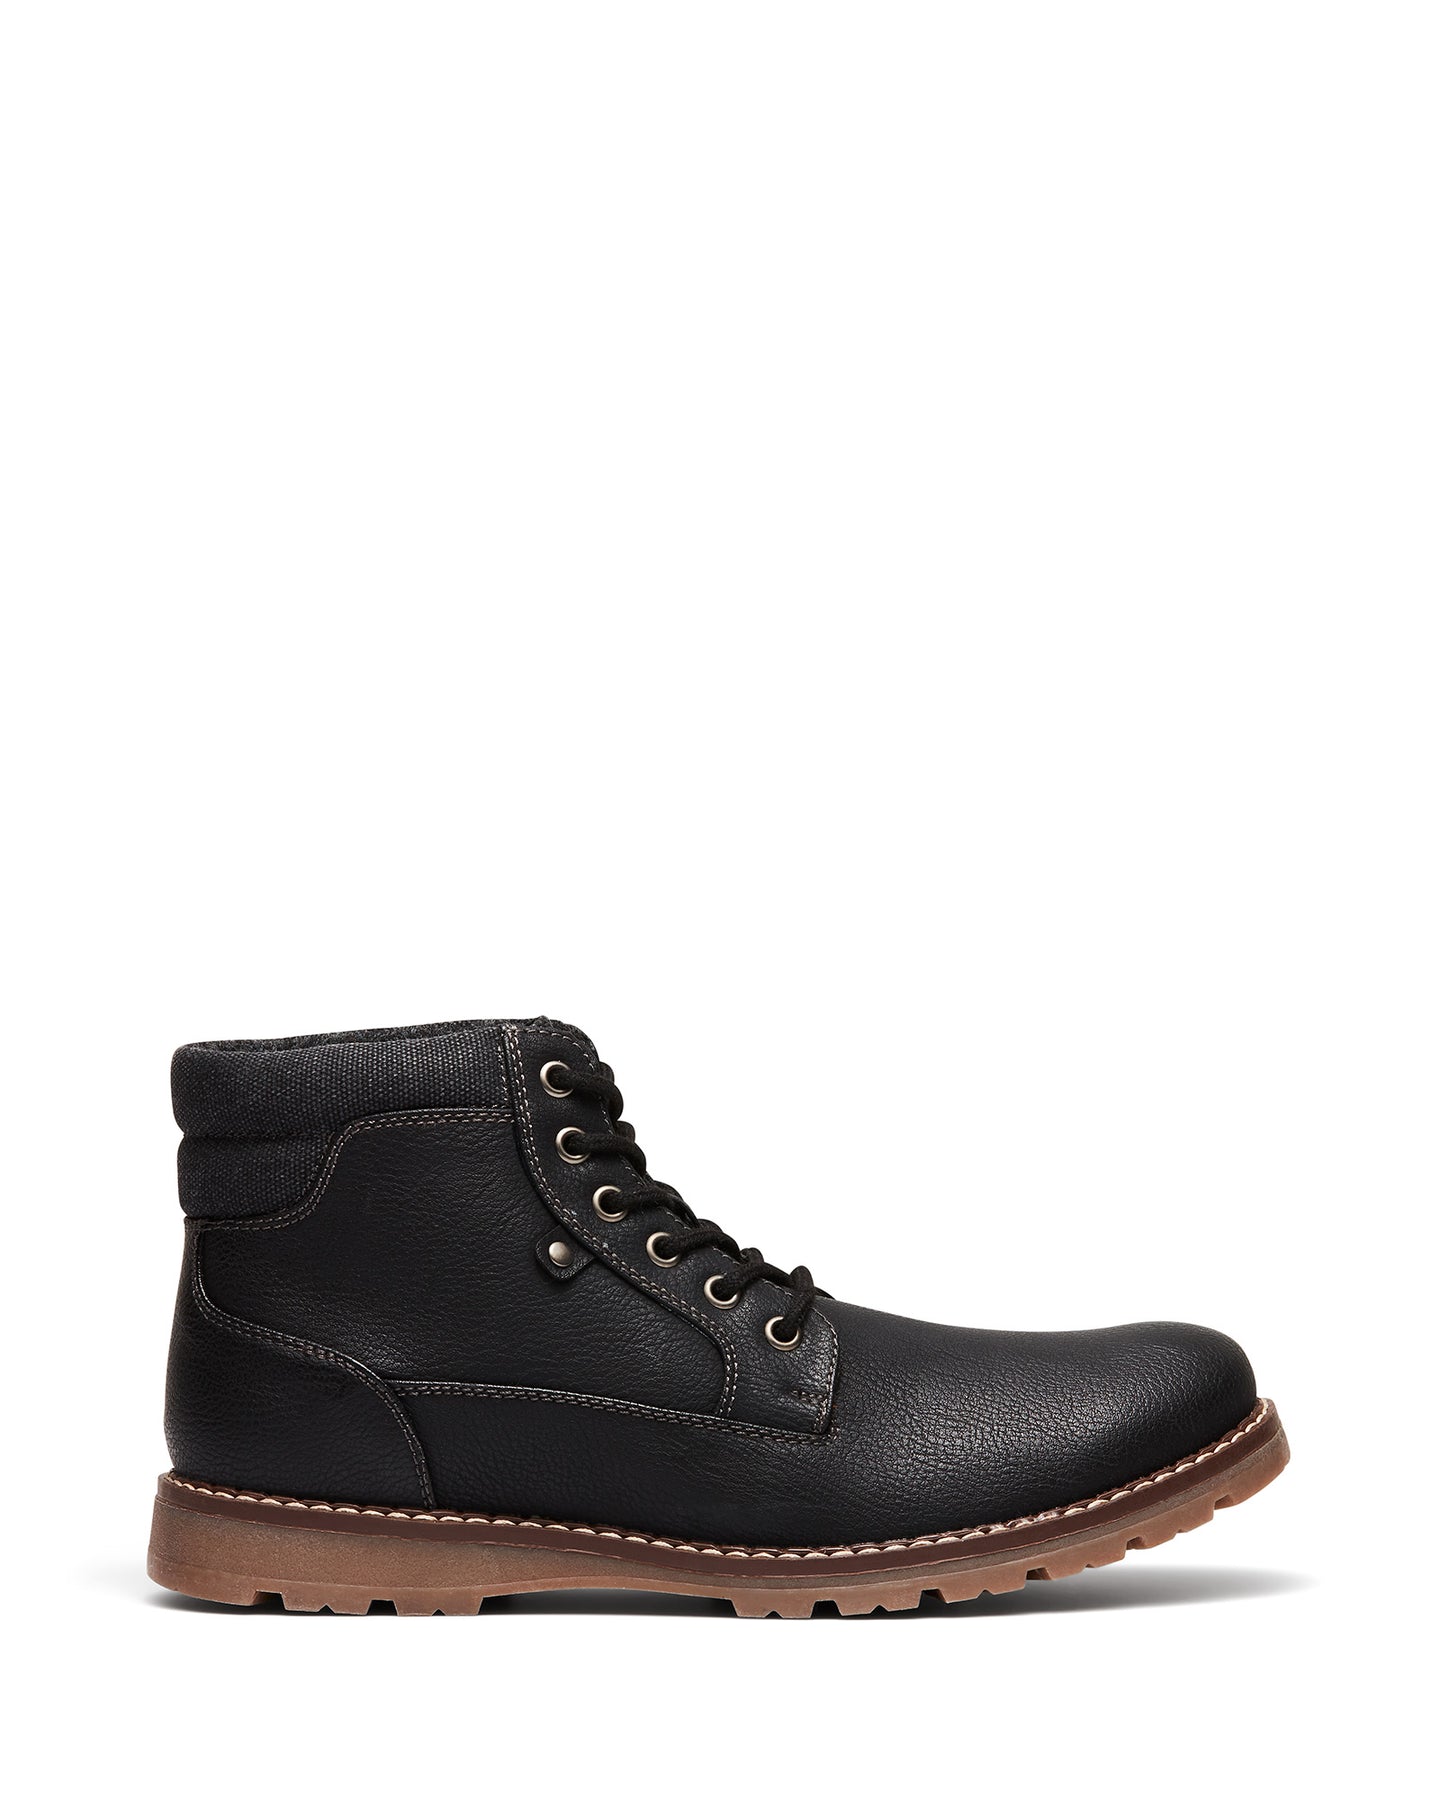 Uncut Shoes Napier Black | Men's Boot | Combat Boot | Lace Up